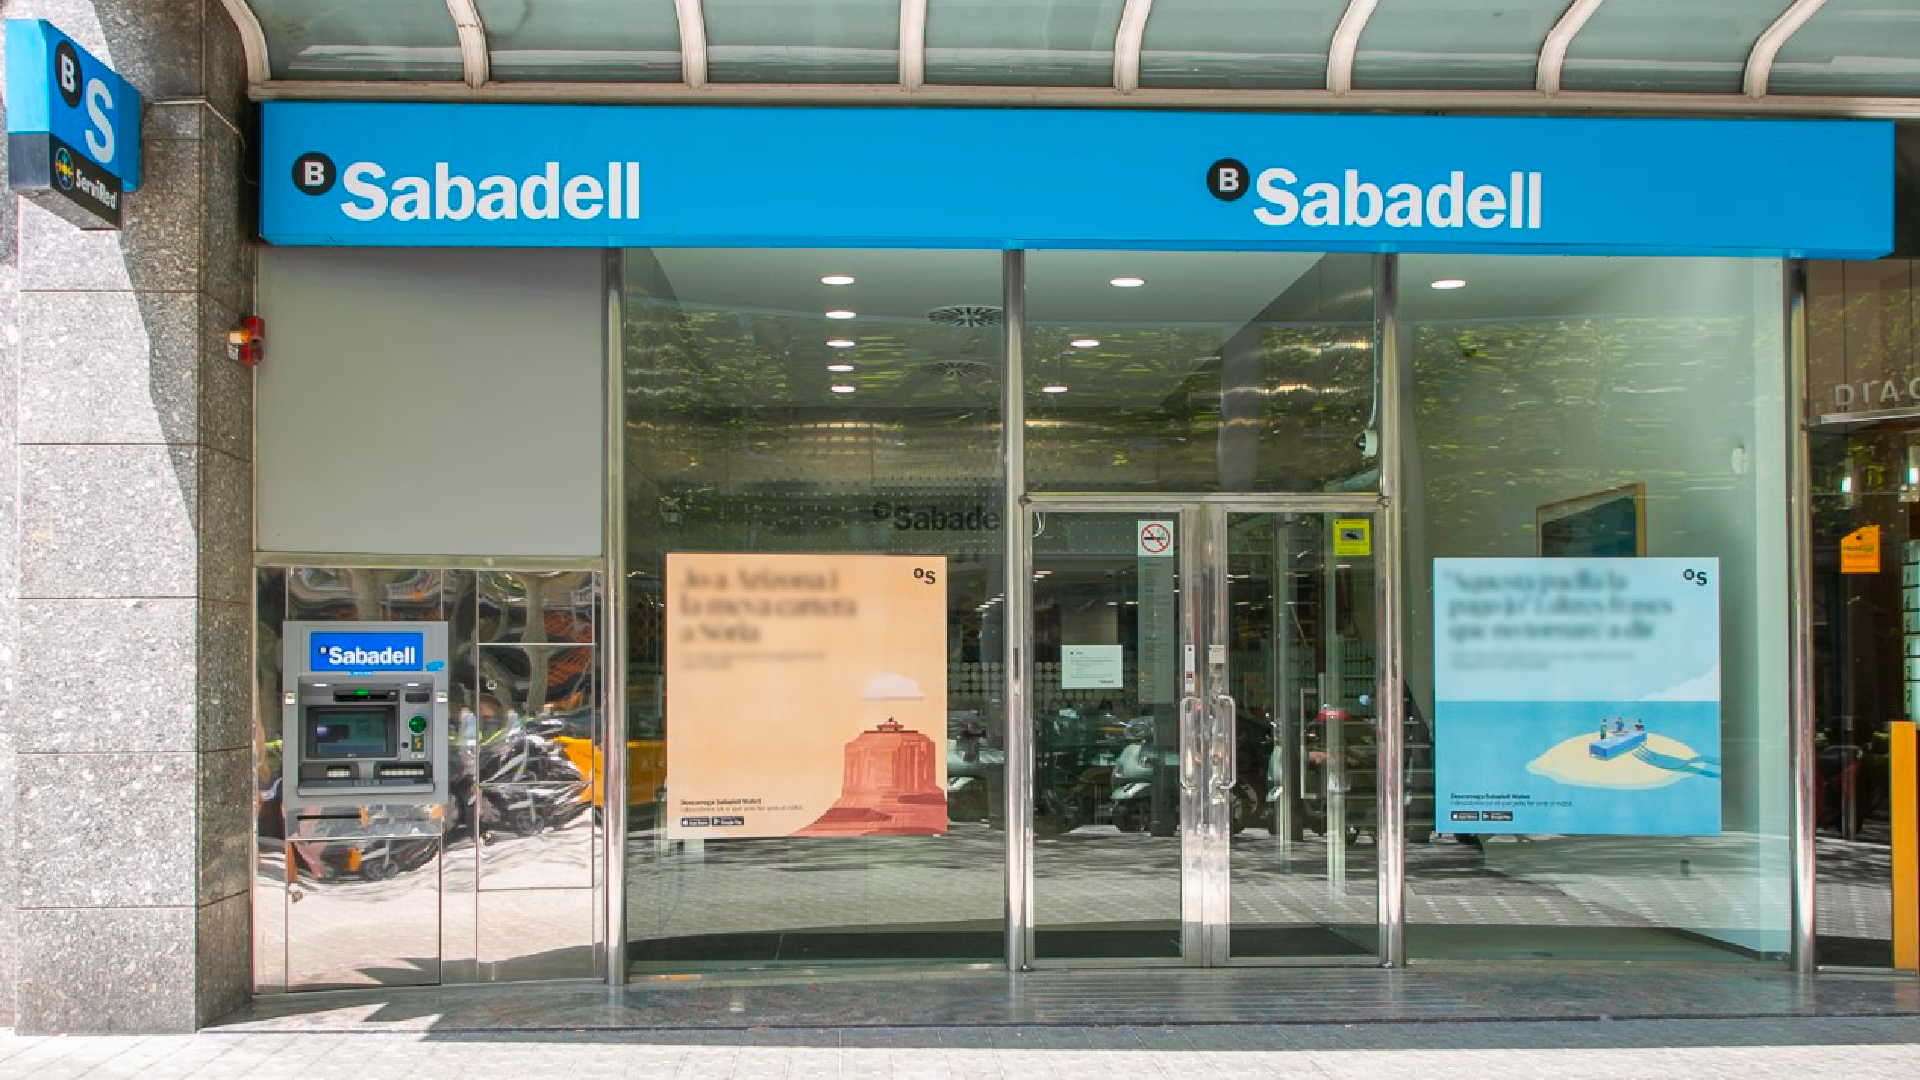 Banco Sabadell Guipuzcoano